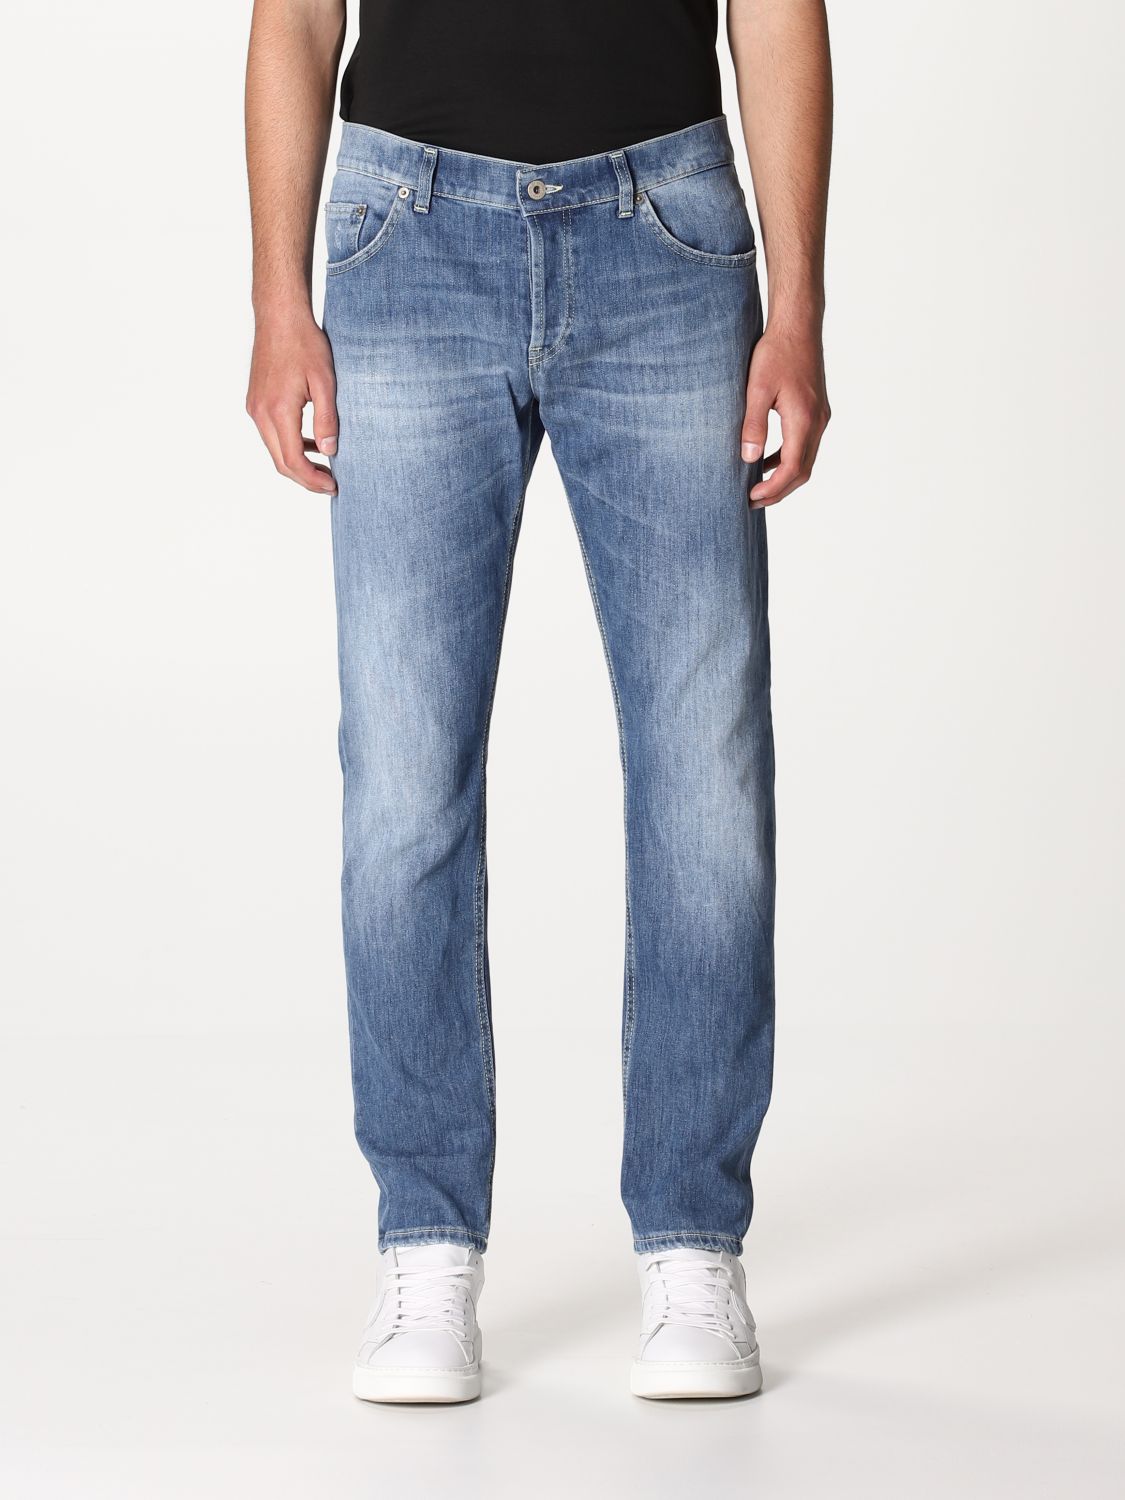 DONDUP: 5-pocket jeans - Denim | Dondup jeans UP168DS0107AY5 online at ...